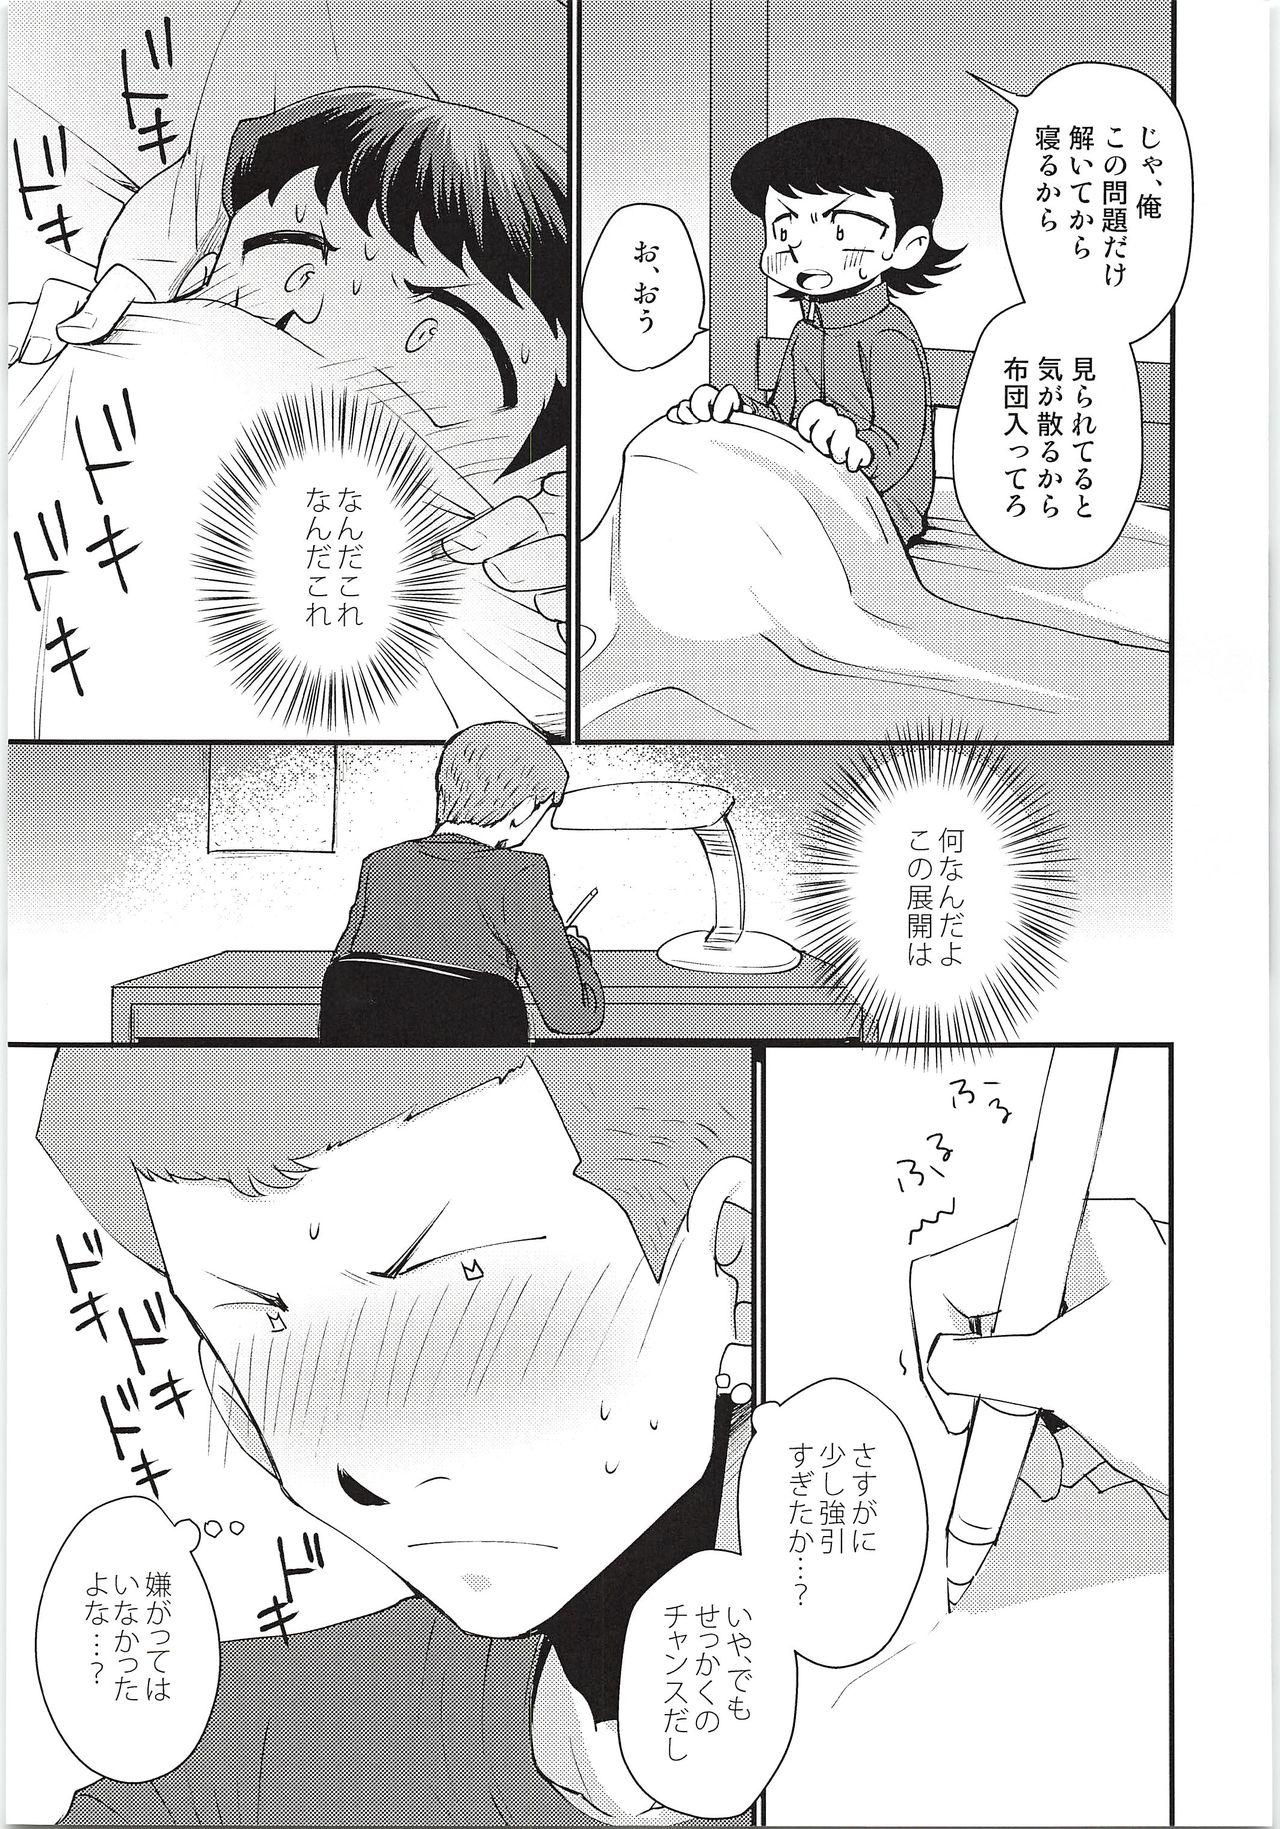 Hiddencam Hazukashikute Shinisou - Daiya no ace Flash - Page 8